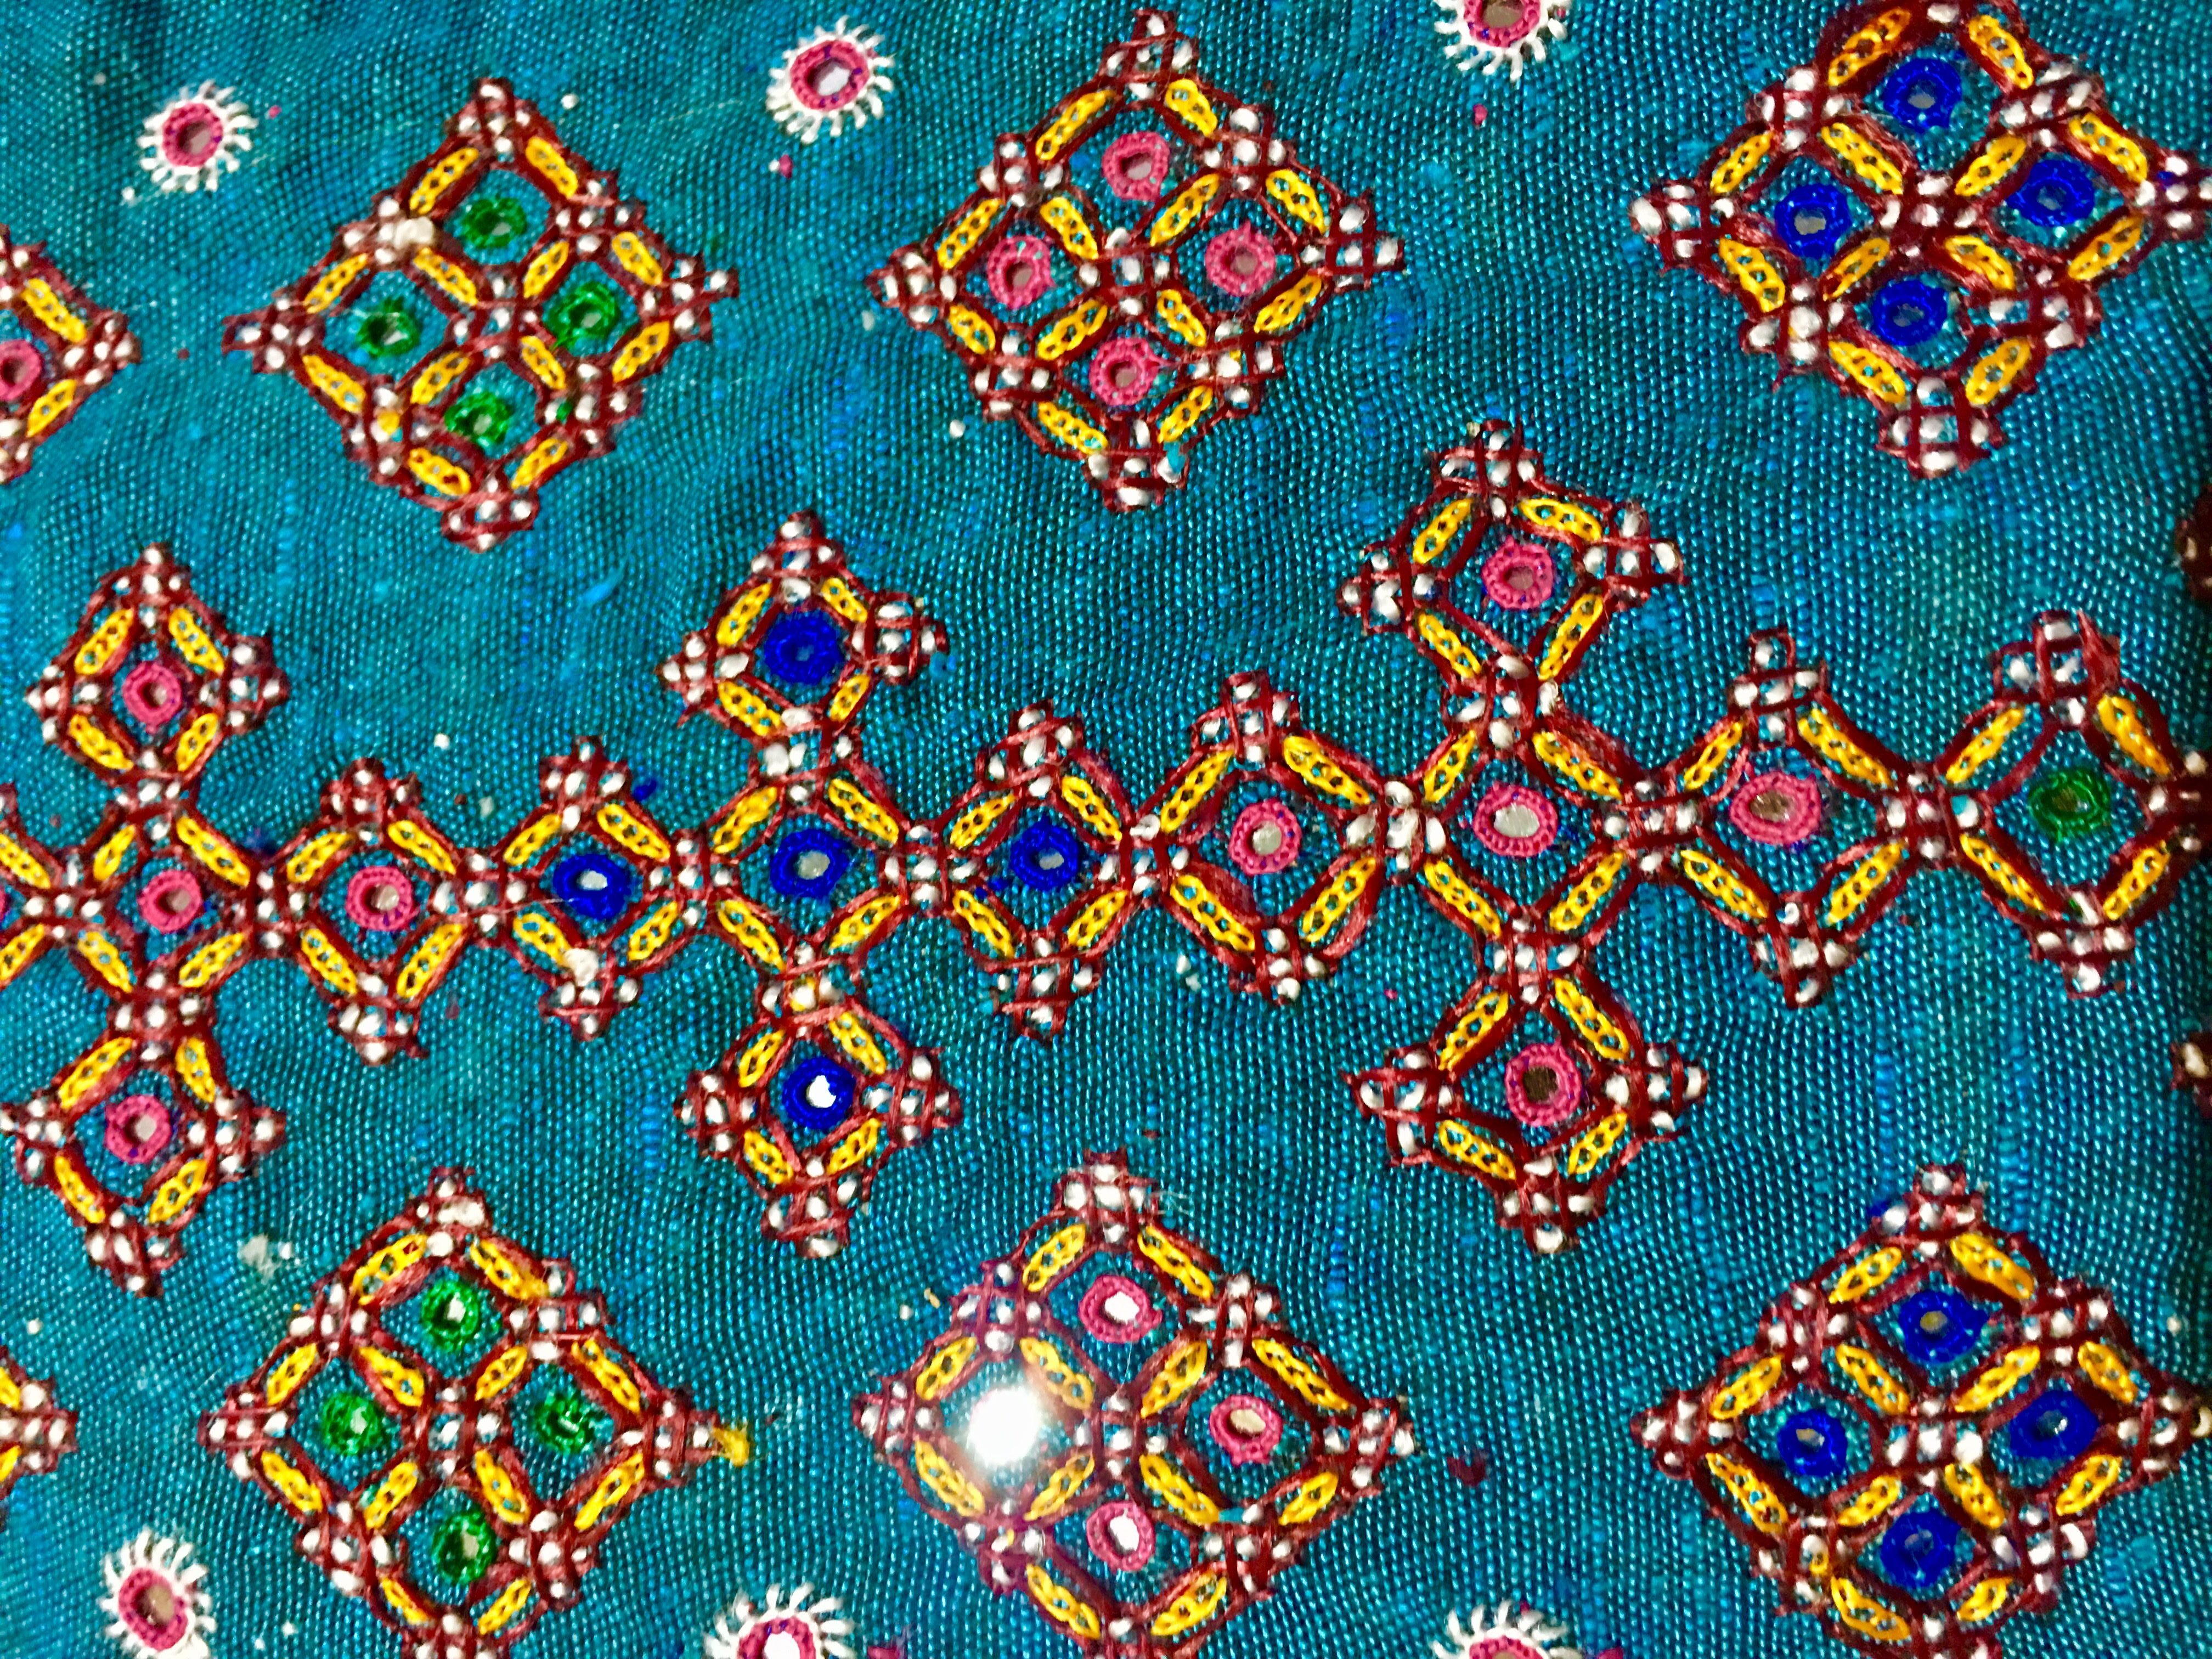 Mutwa Embroidery of Kutch, Gujarat